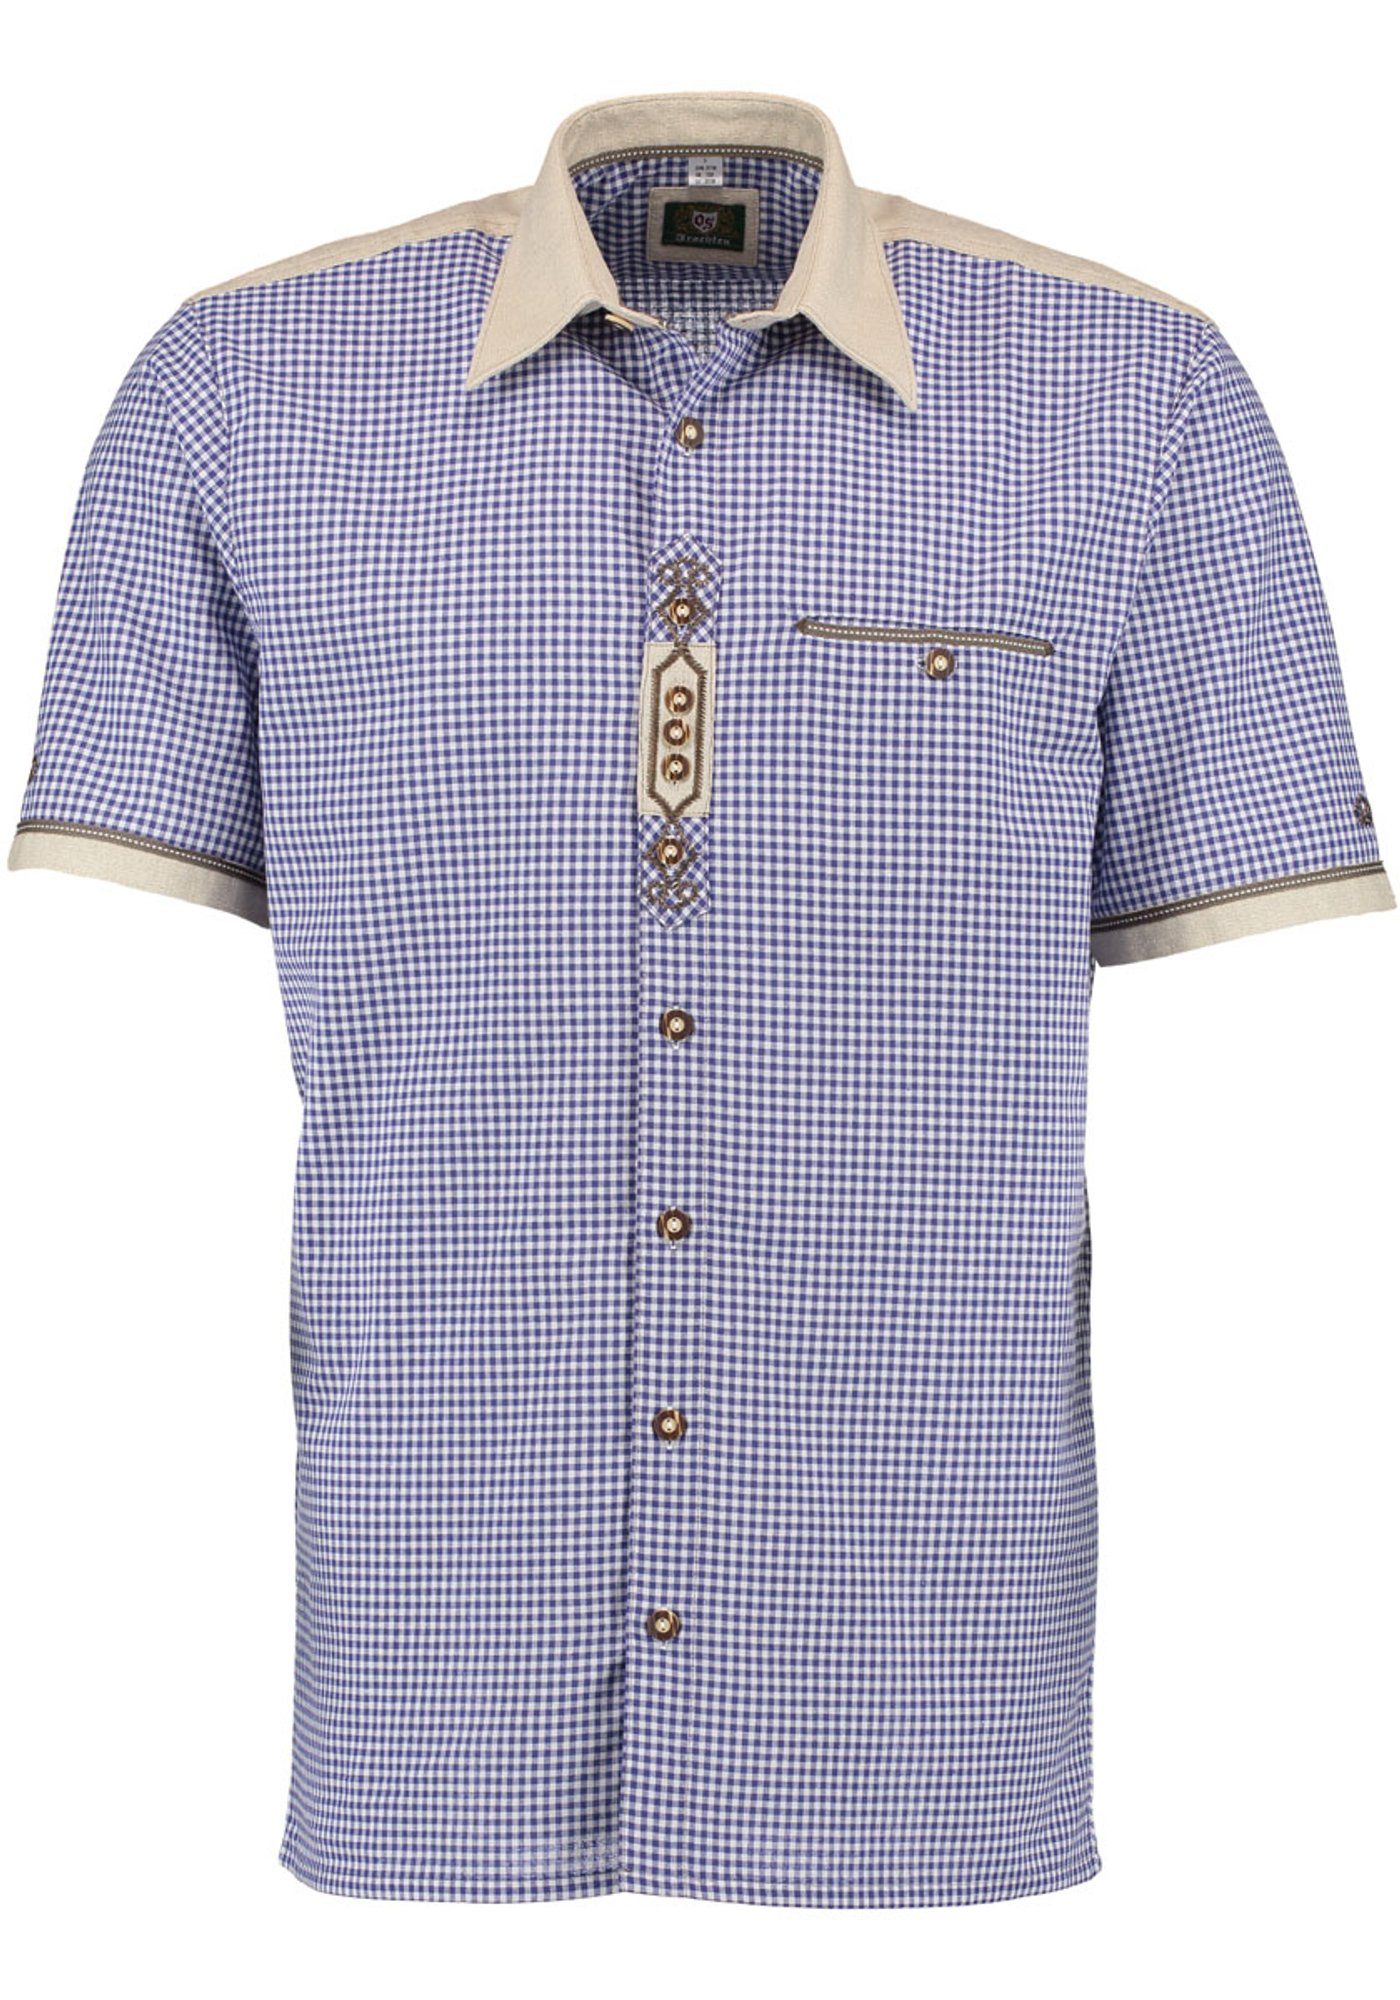 OS-Trachten Trachtenhemd Bakely Kurzarmhemd mit Stickerei auf der Knopfleiste kornblau